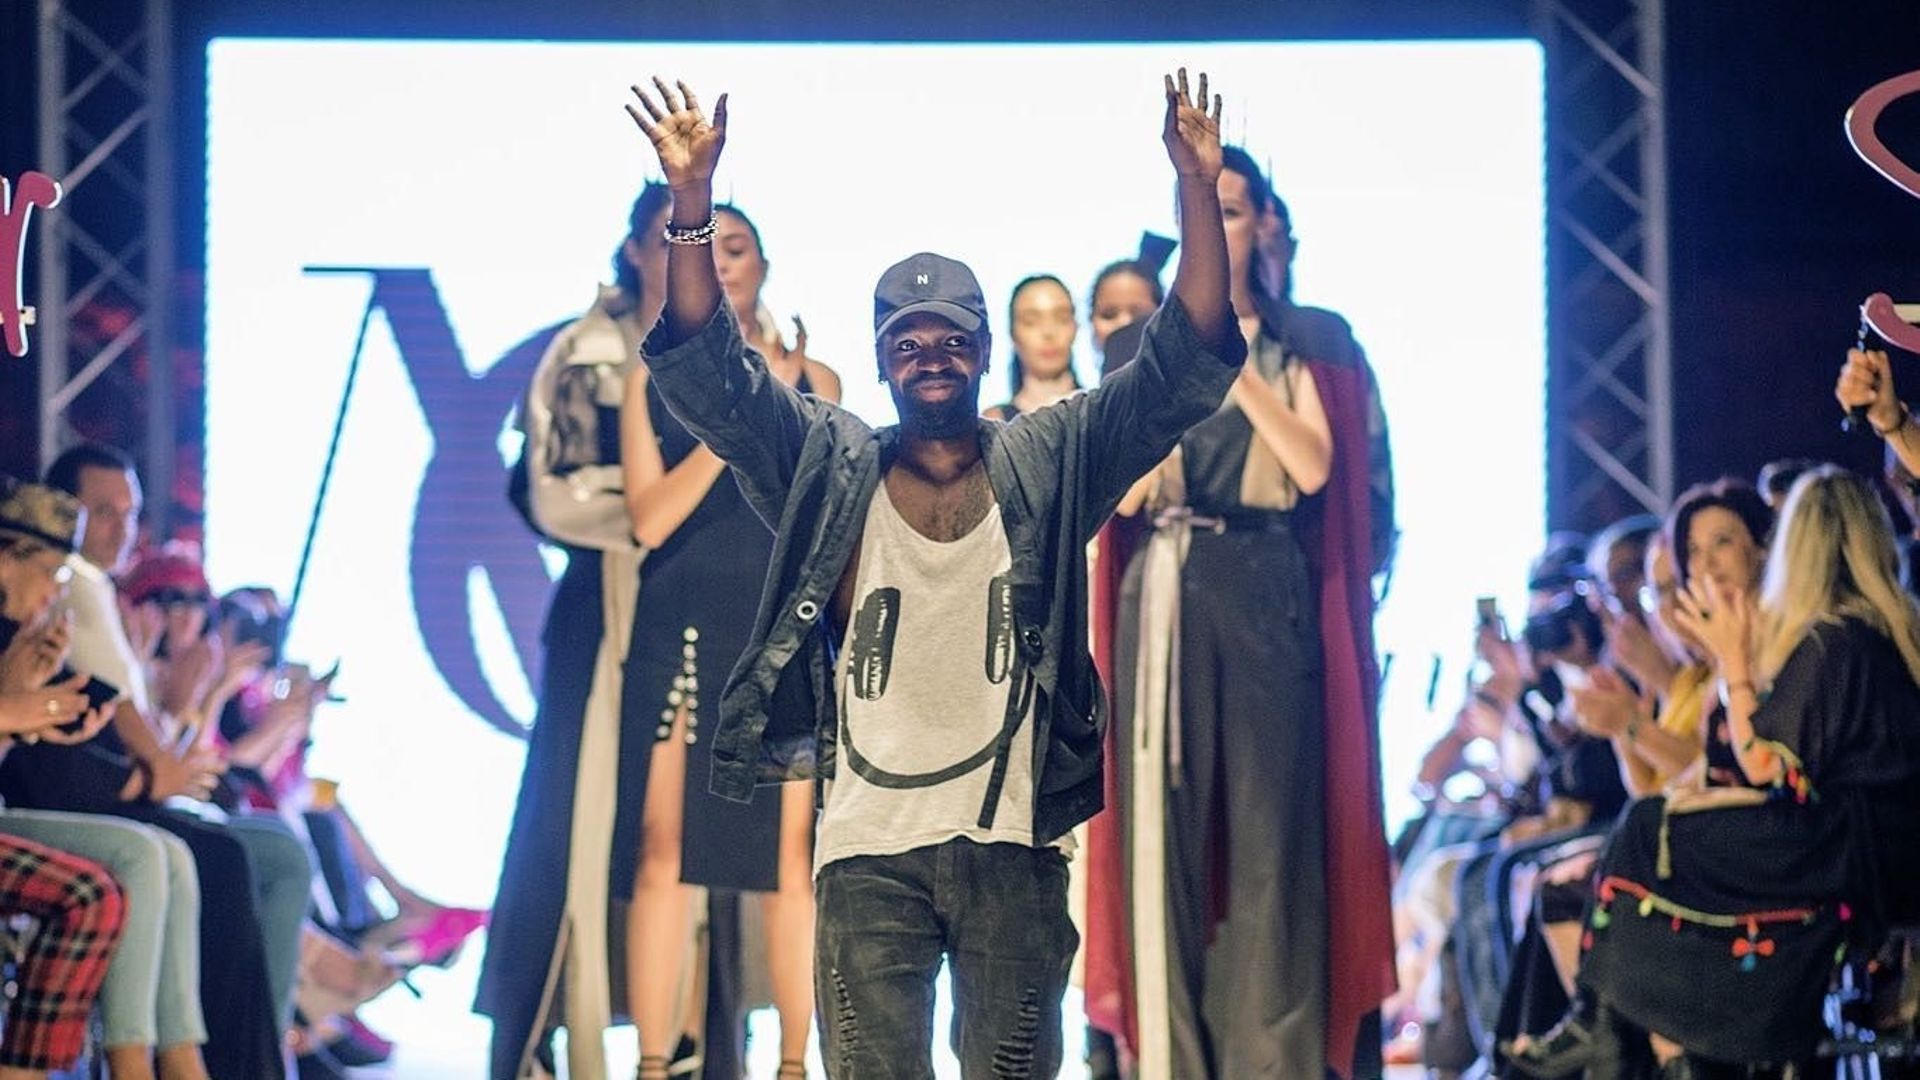 Après les Fashion week de New York, de Tunisie, les Brussels Fashion Days,... Charly Nzogang lance sa propre marque de vêtements "NC".